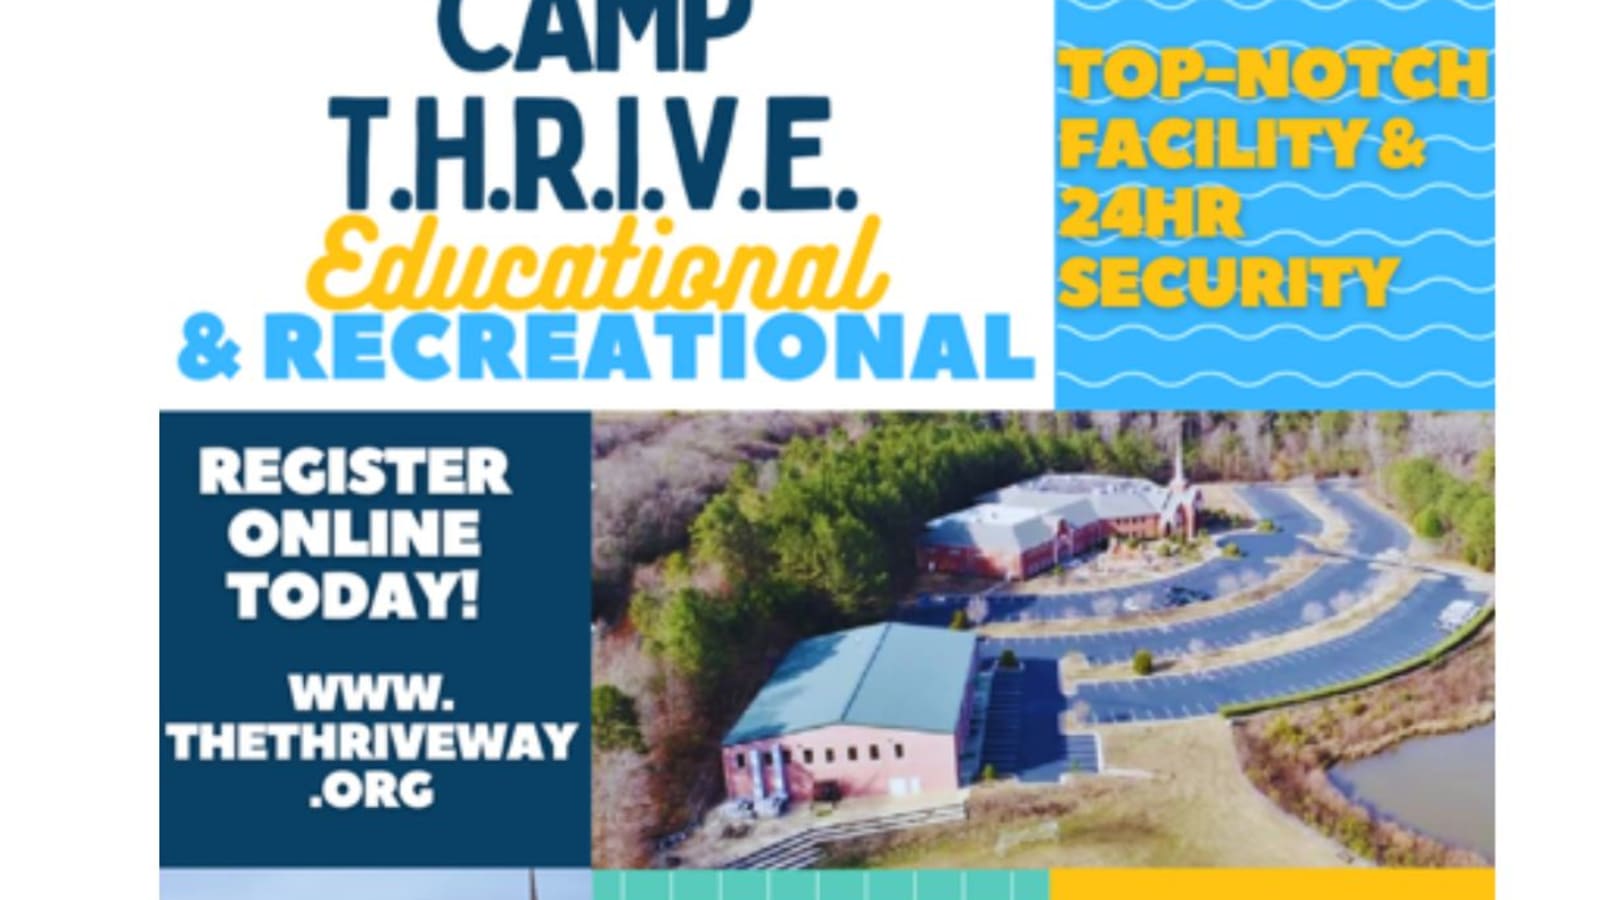 Camp T.H.R.I.V.E located in Tucker, GA!